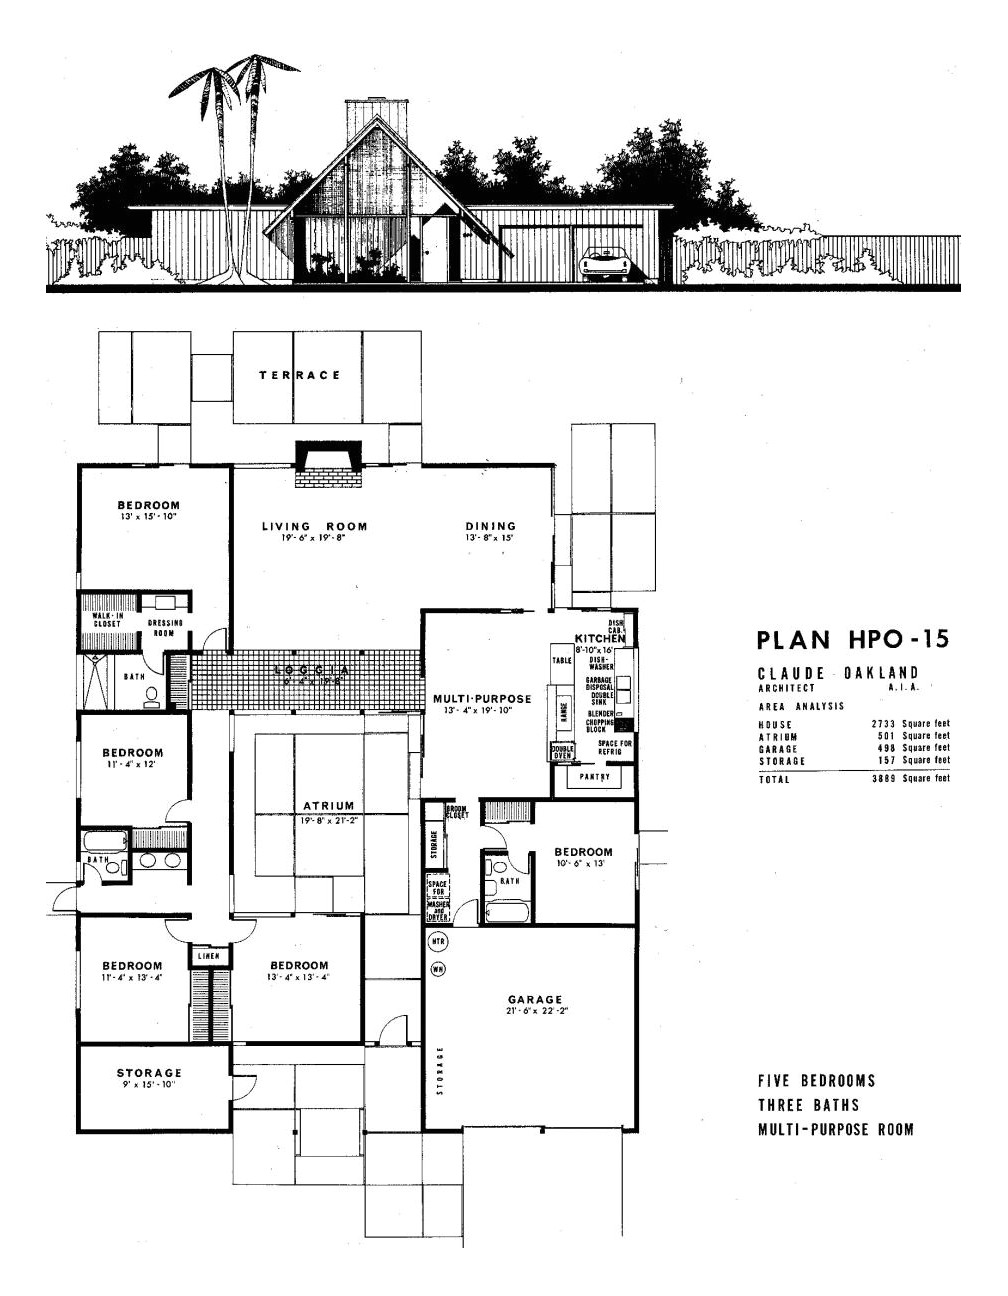 Eichler Homes Floor Plans Dc Hillier 39 S Mcm Daily Joseph Eichler